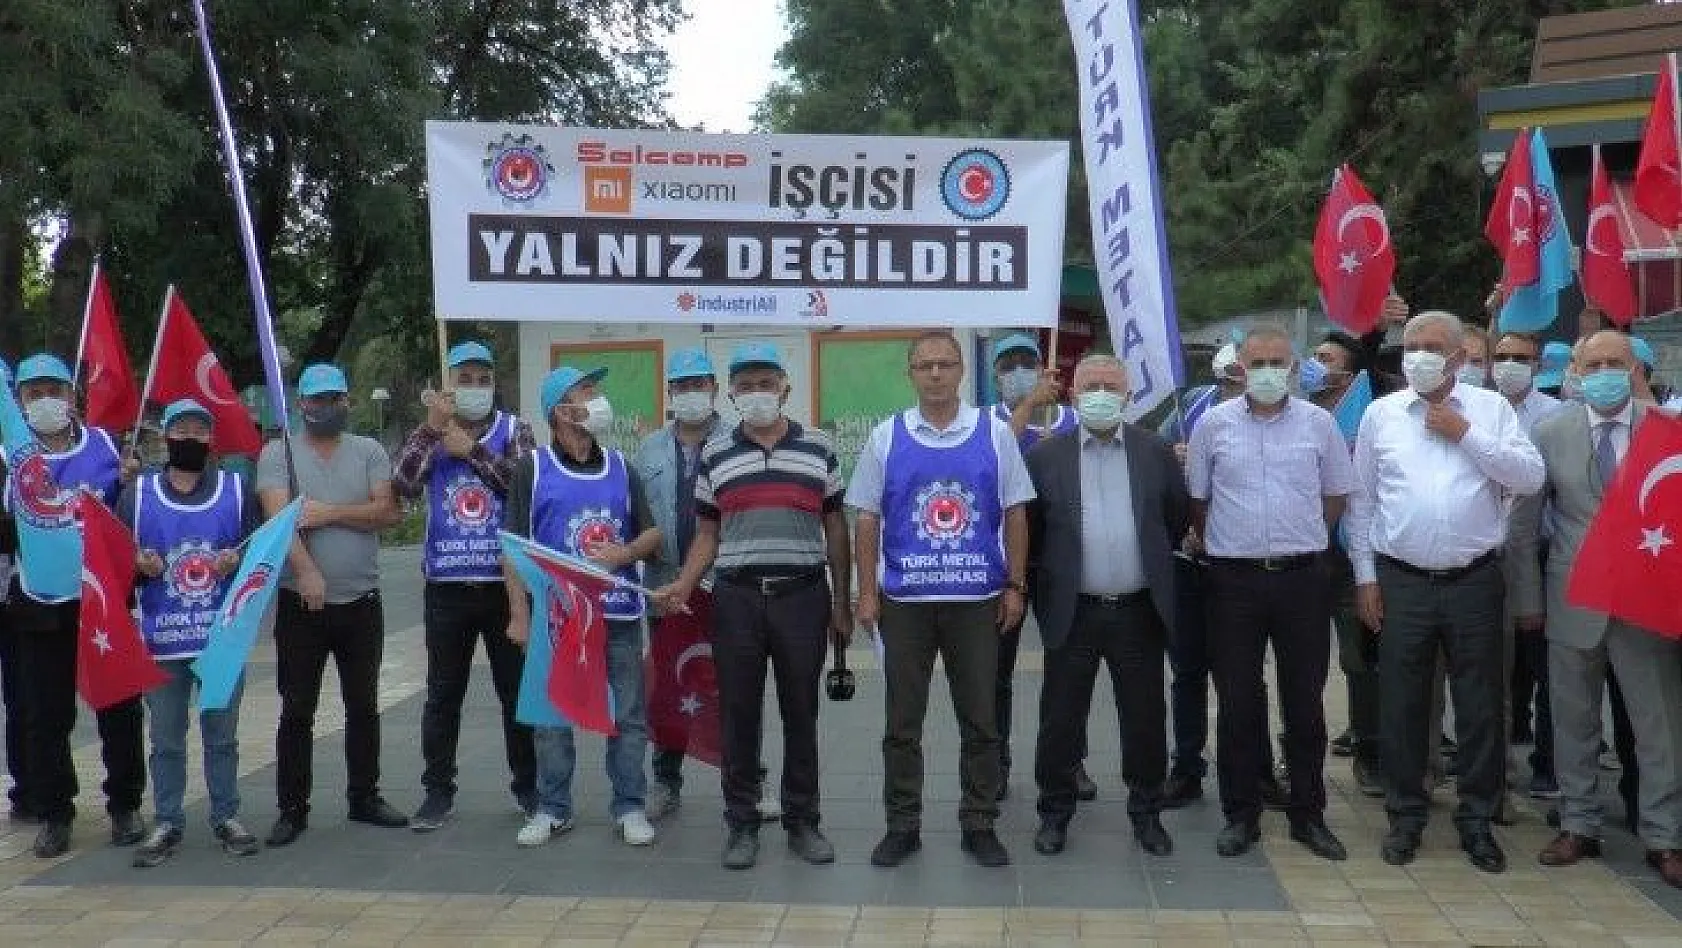 Türk Metal Senadikası'ndan ortak açıklama